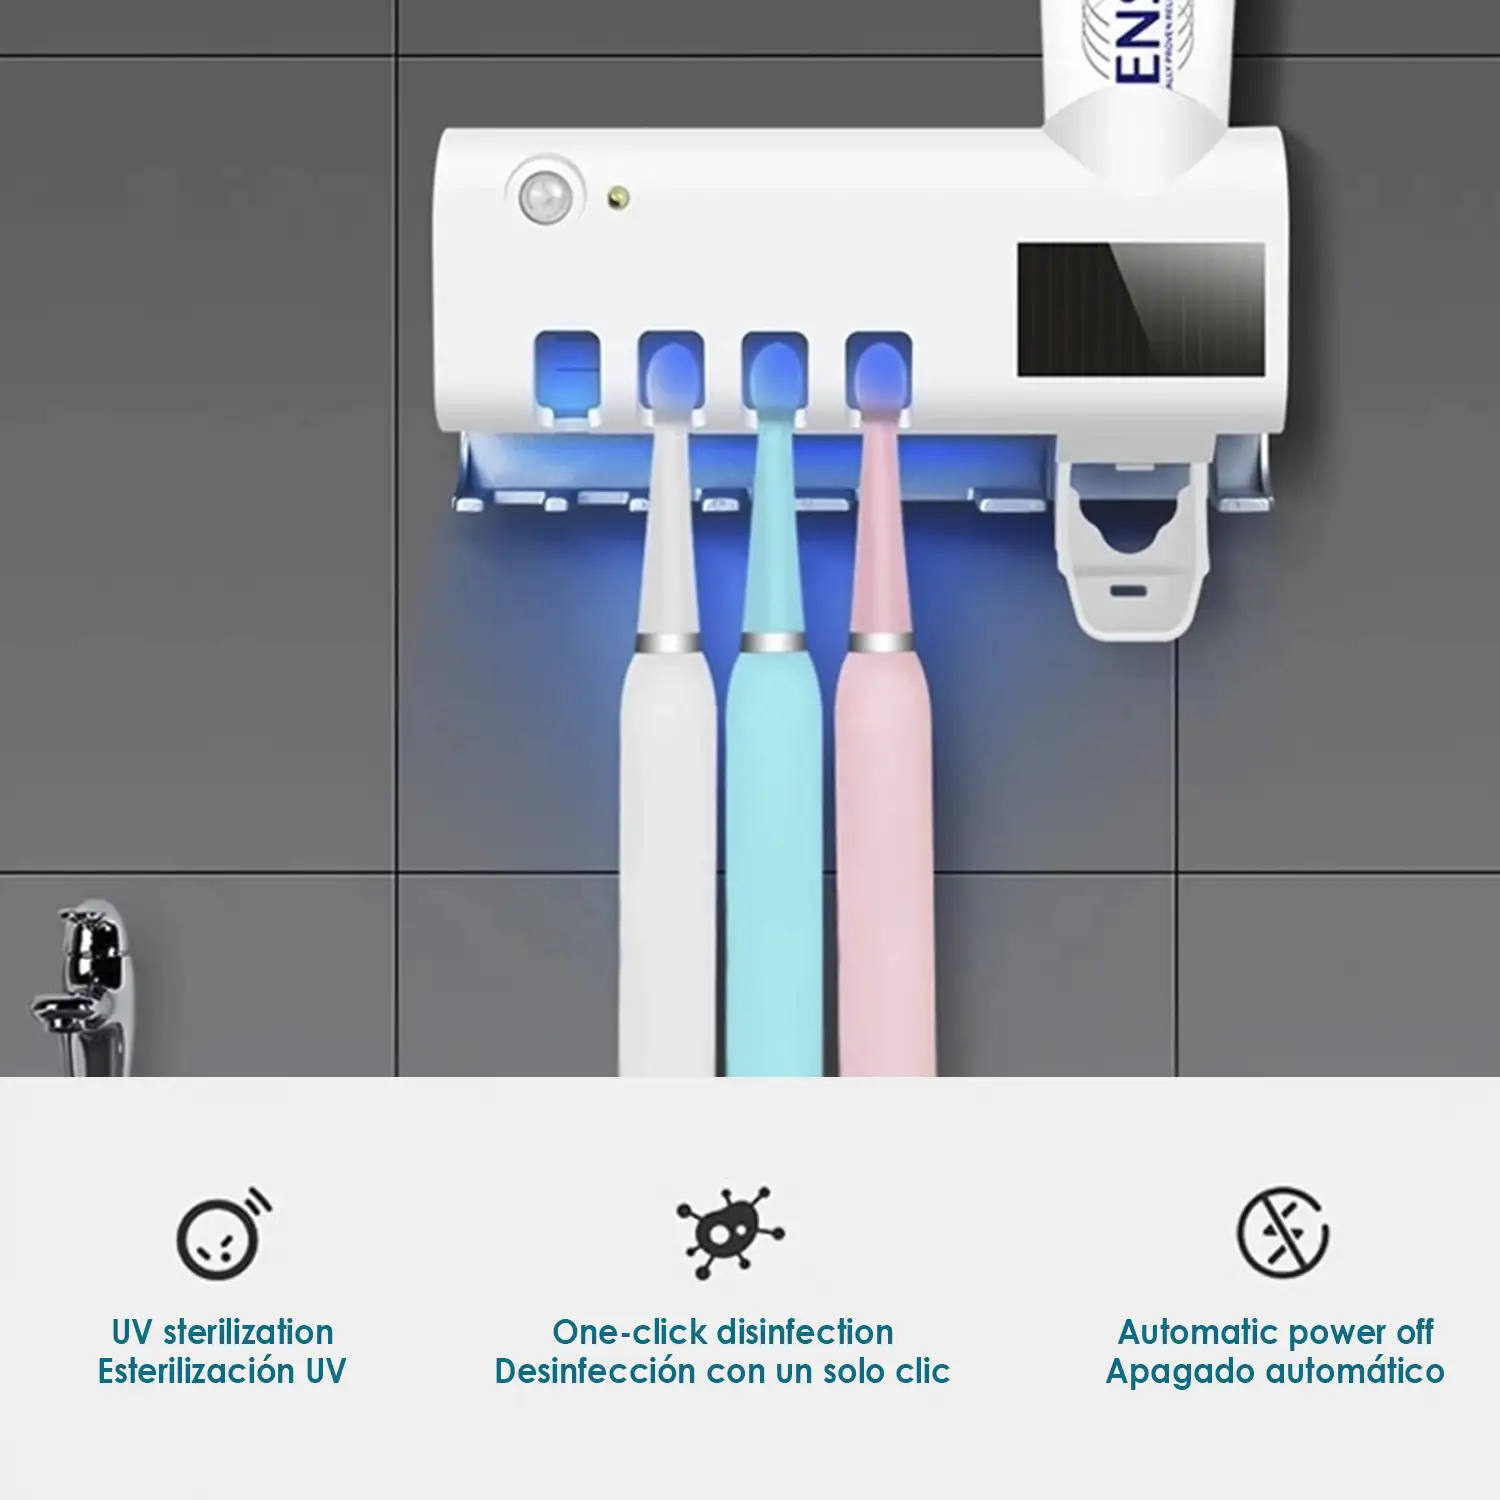 Esterilizador y soporte para 4 cepillos de dientes con dispensador de pasta dental. Panel solar.